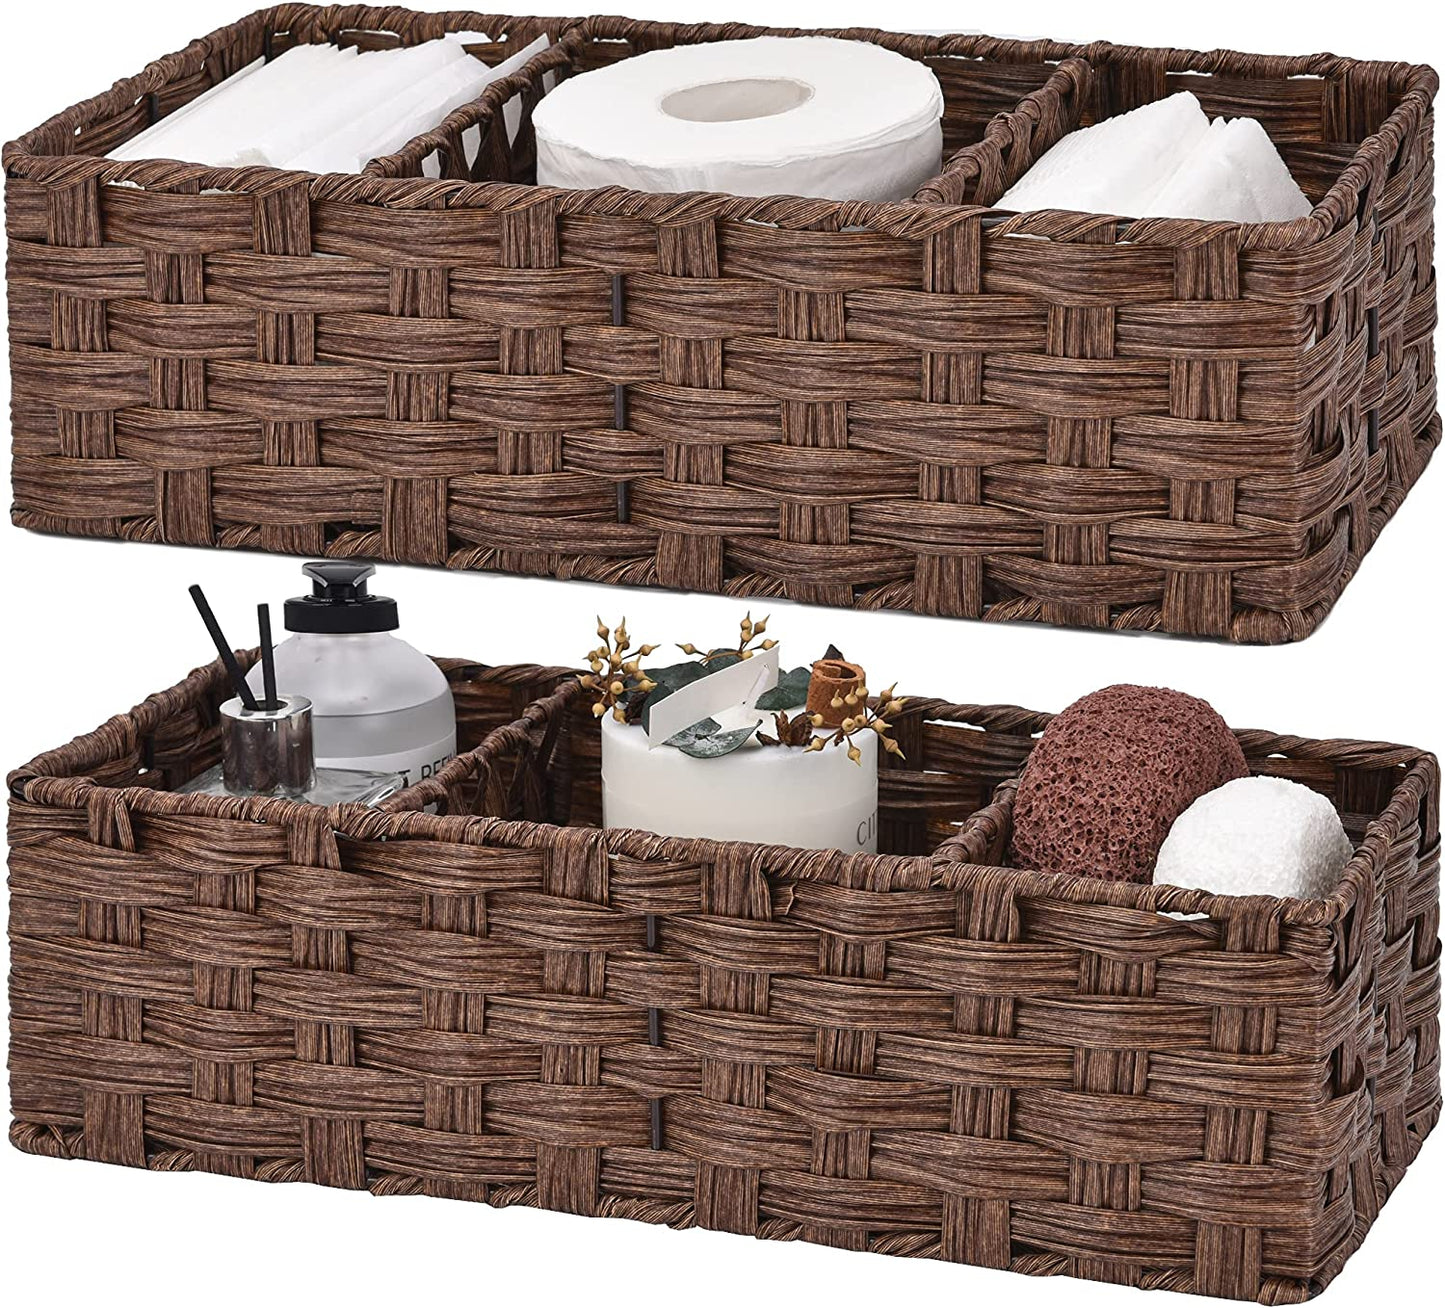 Bathroom Baskets for Organizing, Toilet Storage Basket Waterproof, Wicker Tank Basket with 2 Dividers, Brown, 2-Pack